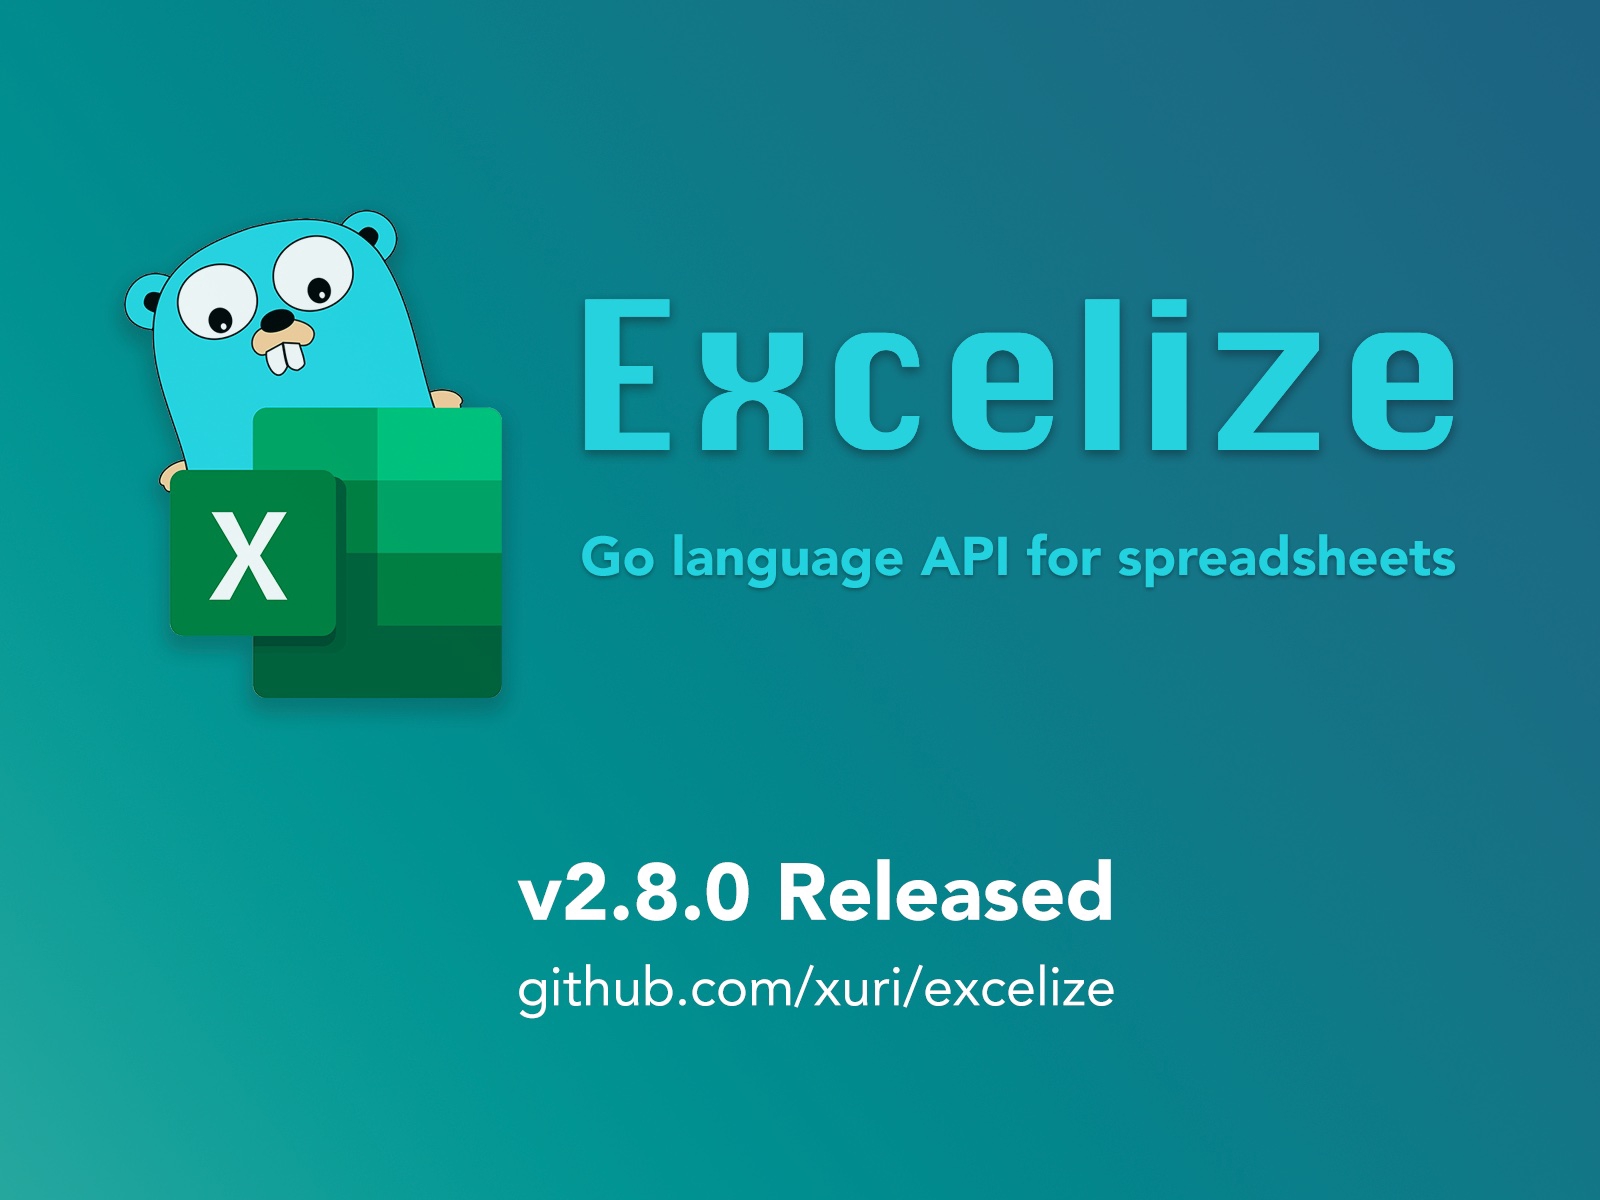 Go 言語スプレッドシートライブラリ：Excelize 2.8.0 がリリースされました